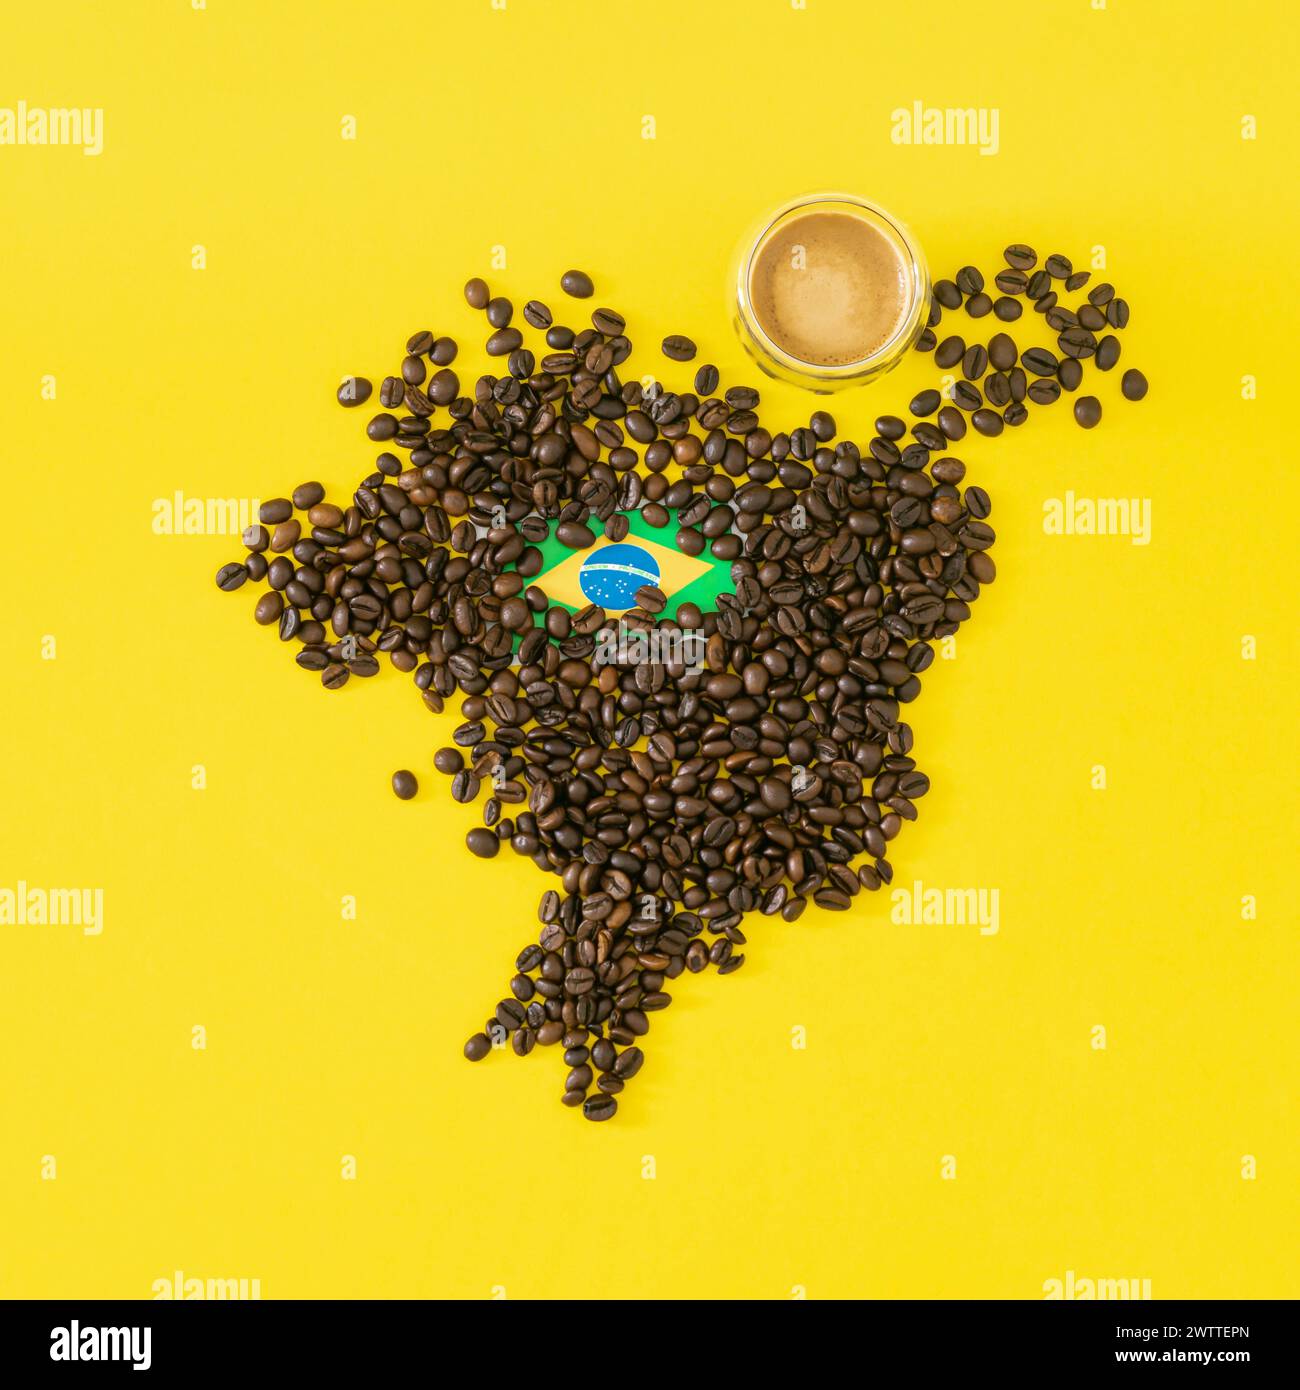 Composición creativa hecha con taza de café, mapa de Brasil hecho con granos de café tostados y bandera brasileña sobre fondo amarillo. Diseño mínimo. Foto de stock